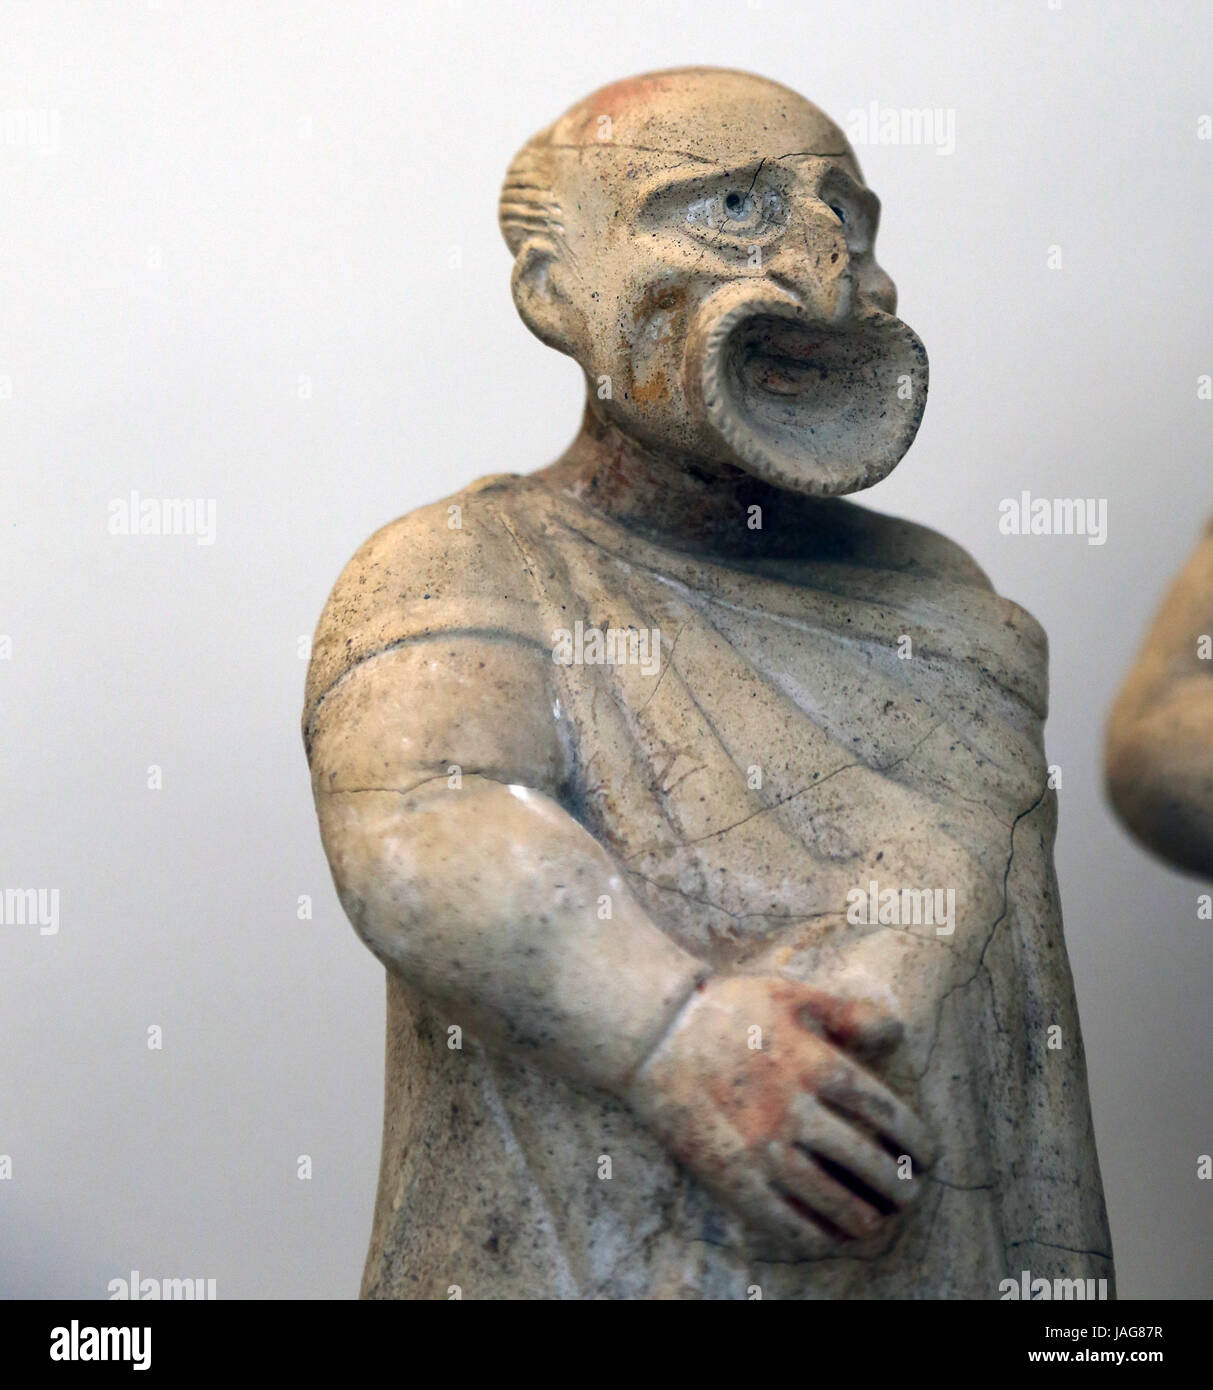 Terrakotta-Figur der Komiker. Etruskische. 2. Jh. BC. Canino, Italien. Schauspieler mit Maske eines kahlköpfigen Sklaven mit einer Handtasche in der Hand. Britischer M Stockfoto